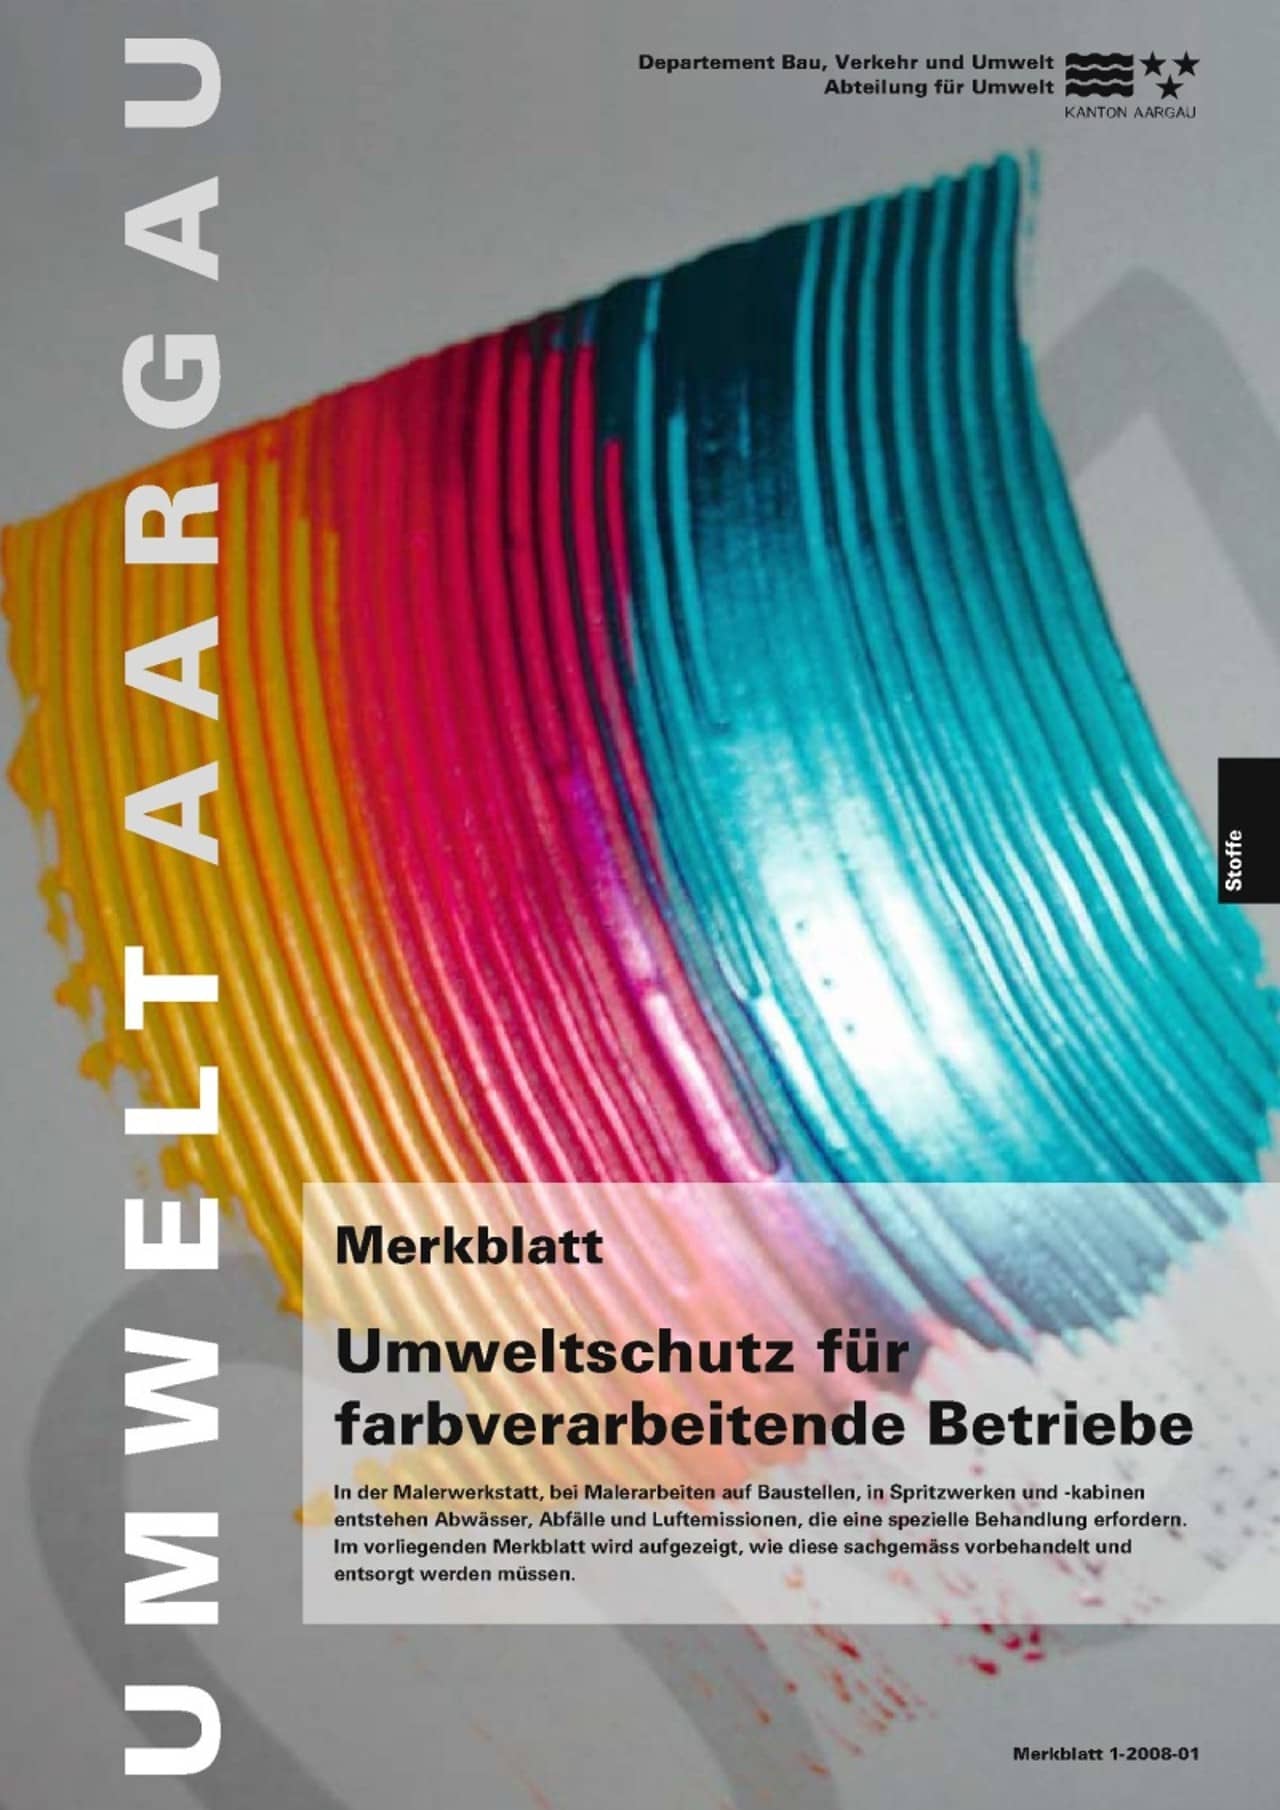 Titelblatt des Merkblattes "Umweltschutz für farbverarbeitende Betriebe".